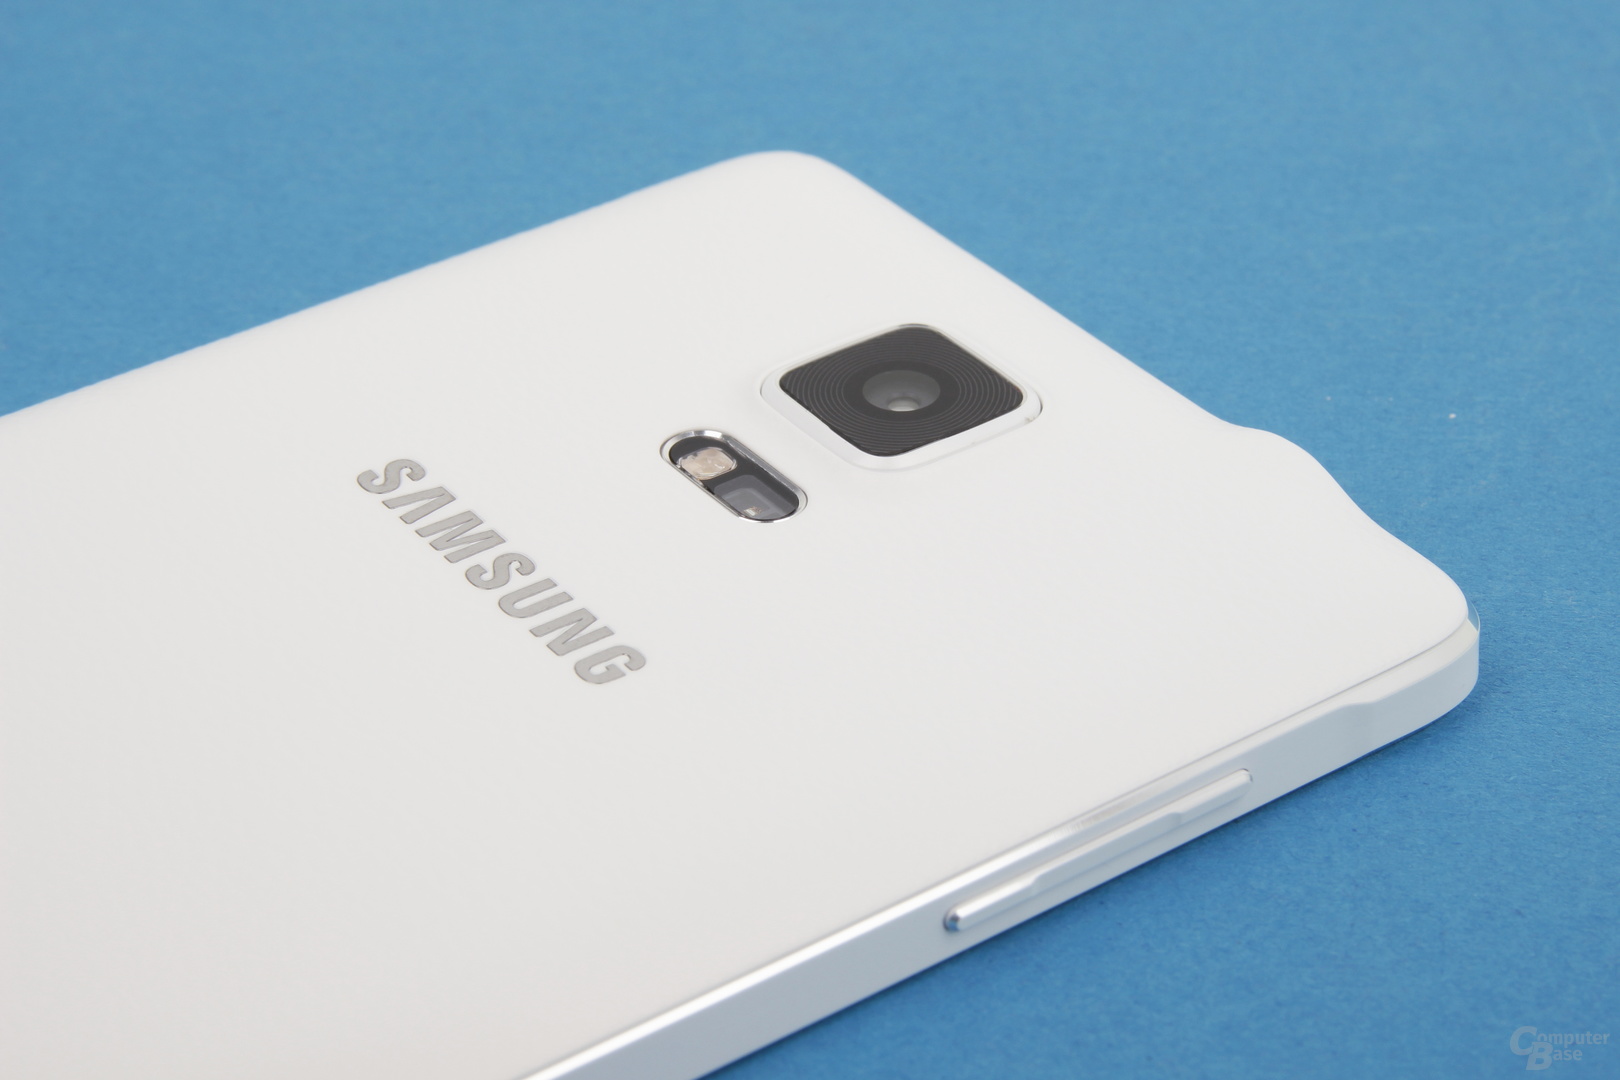 Das neue Design steht dem Samsung Galaxy Note 4 gut